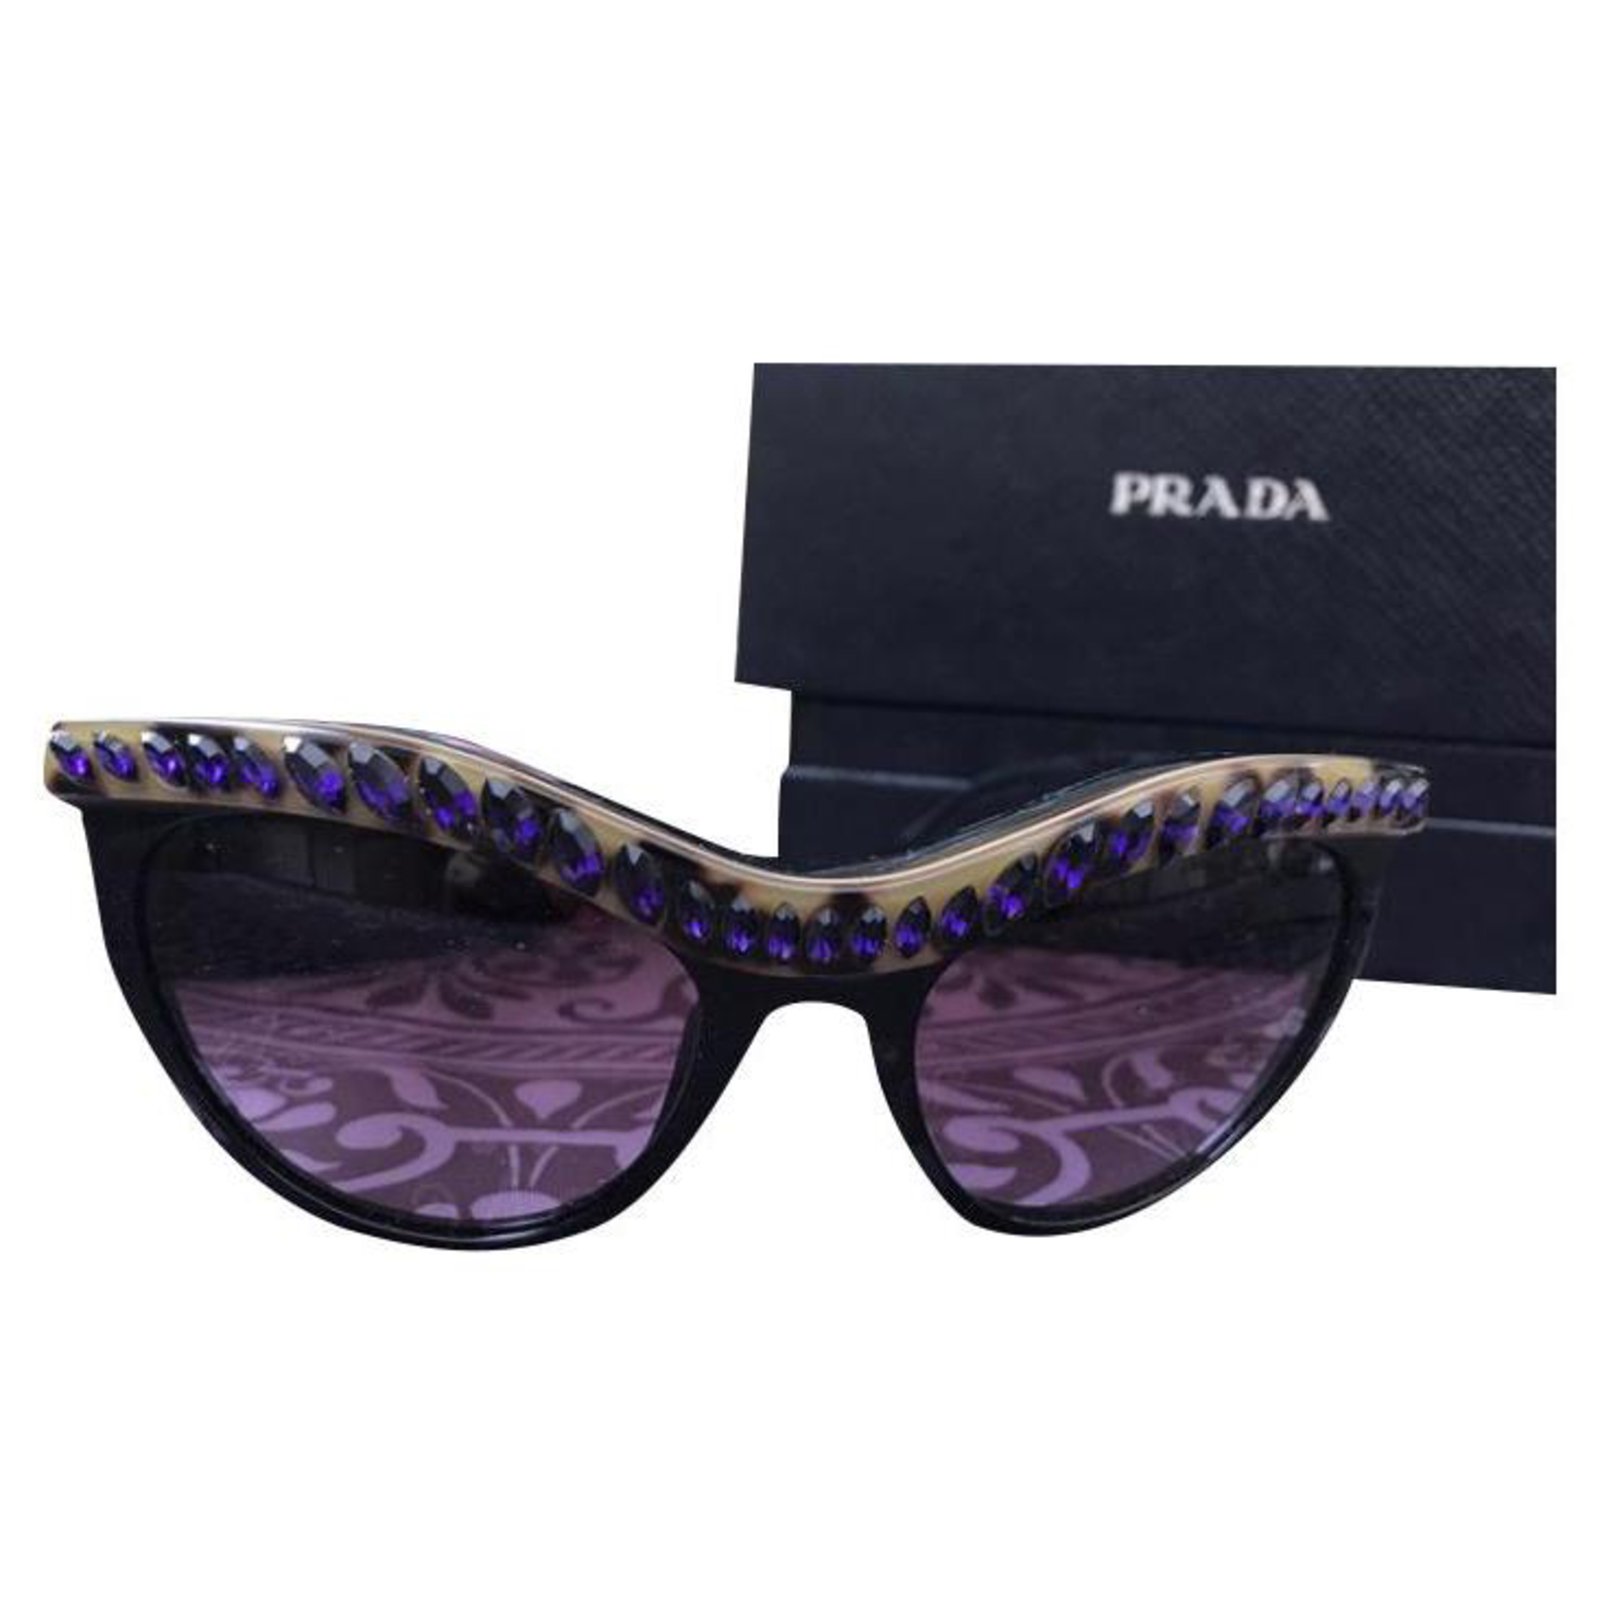 prada animal print sunglasses